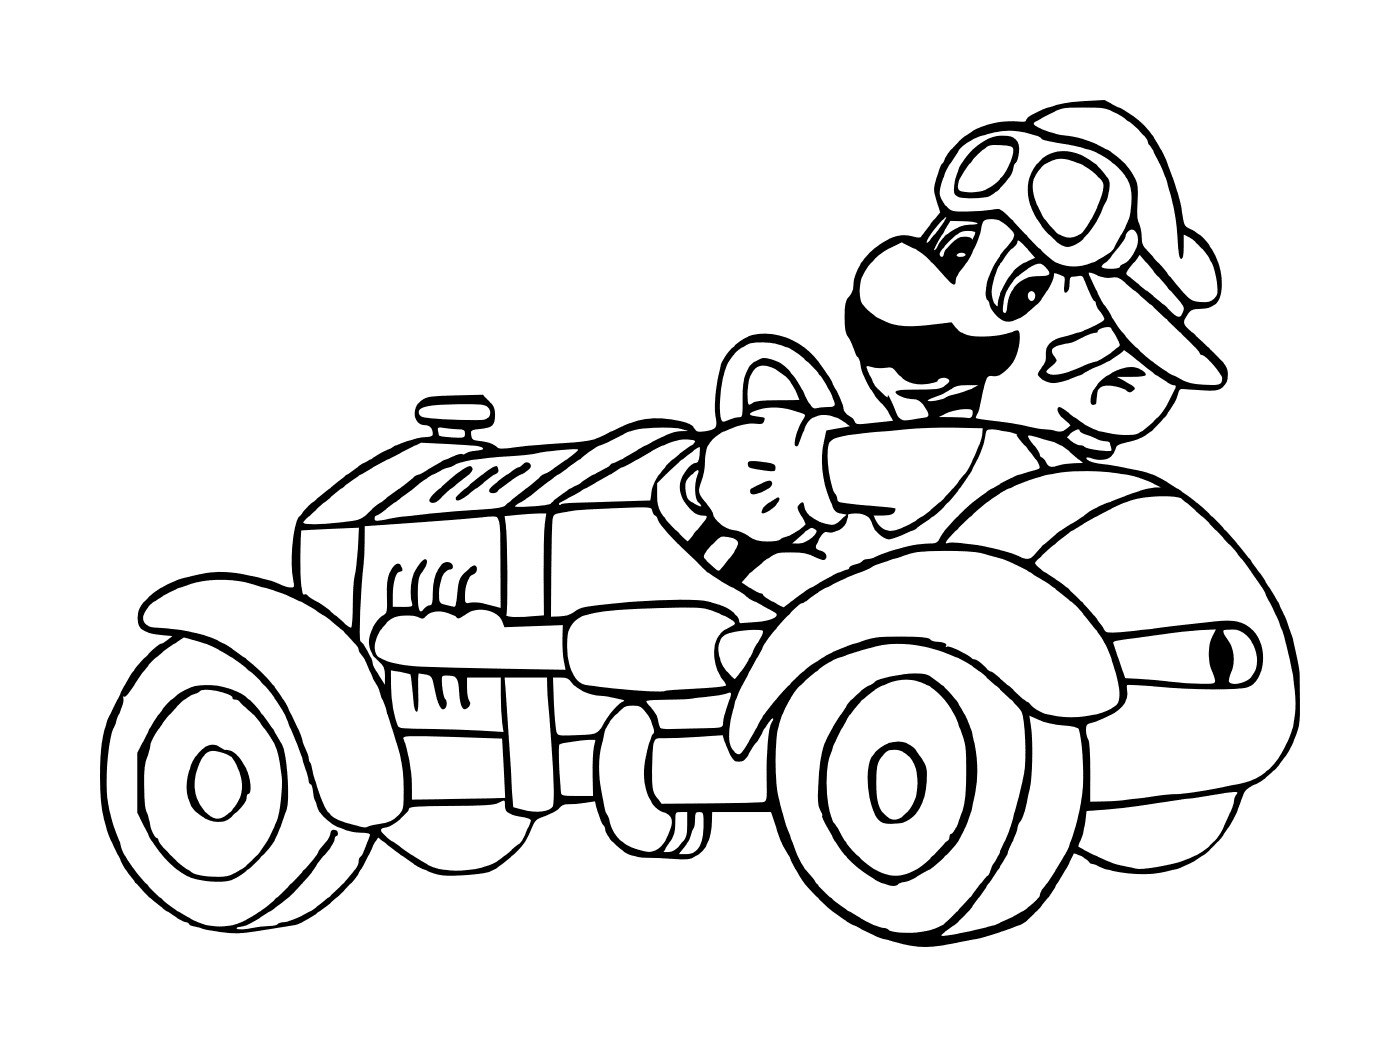  Mario Kart, un coche viejo 